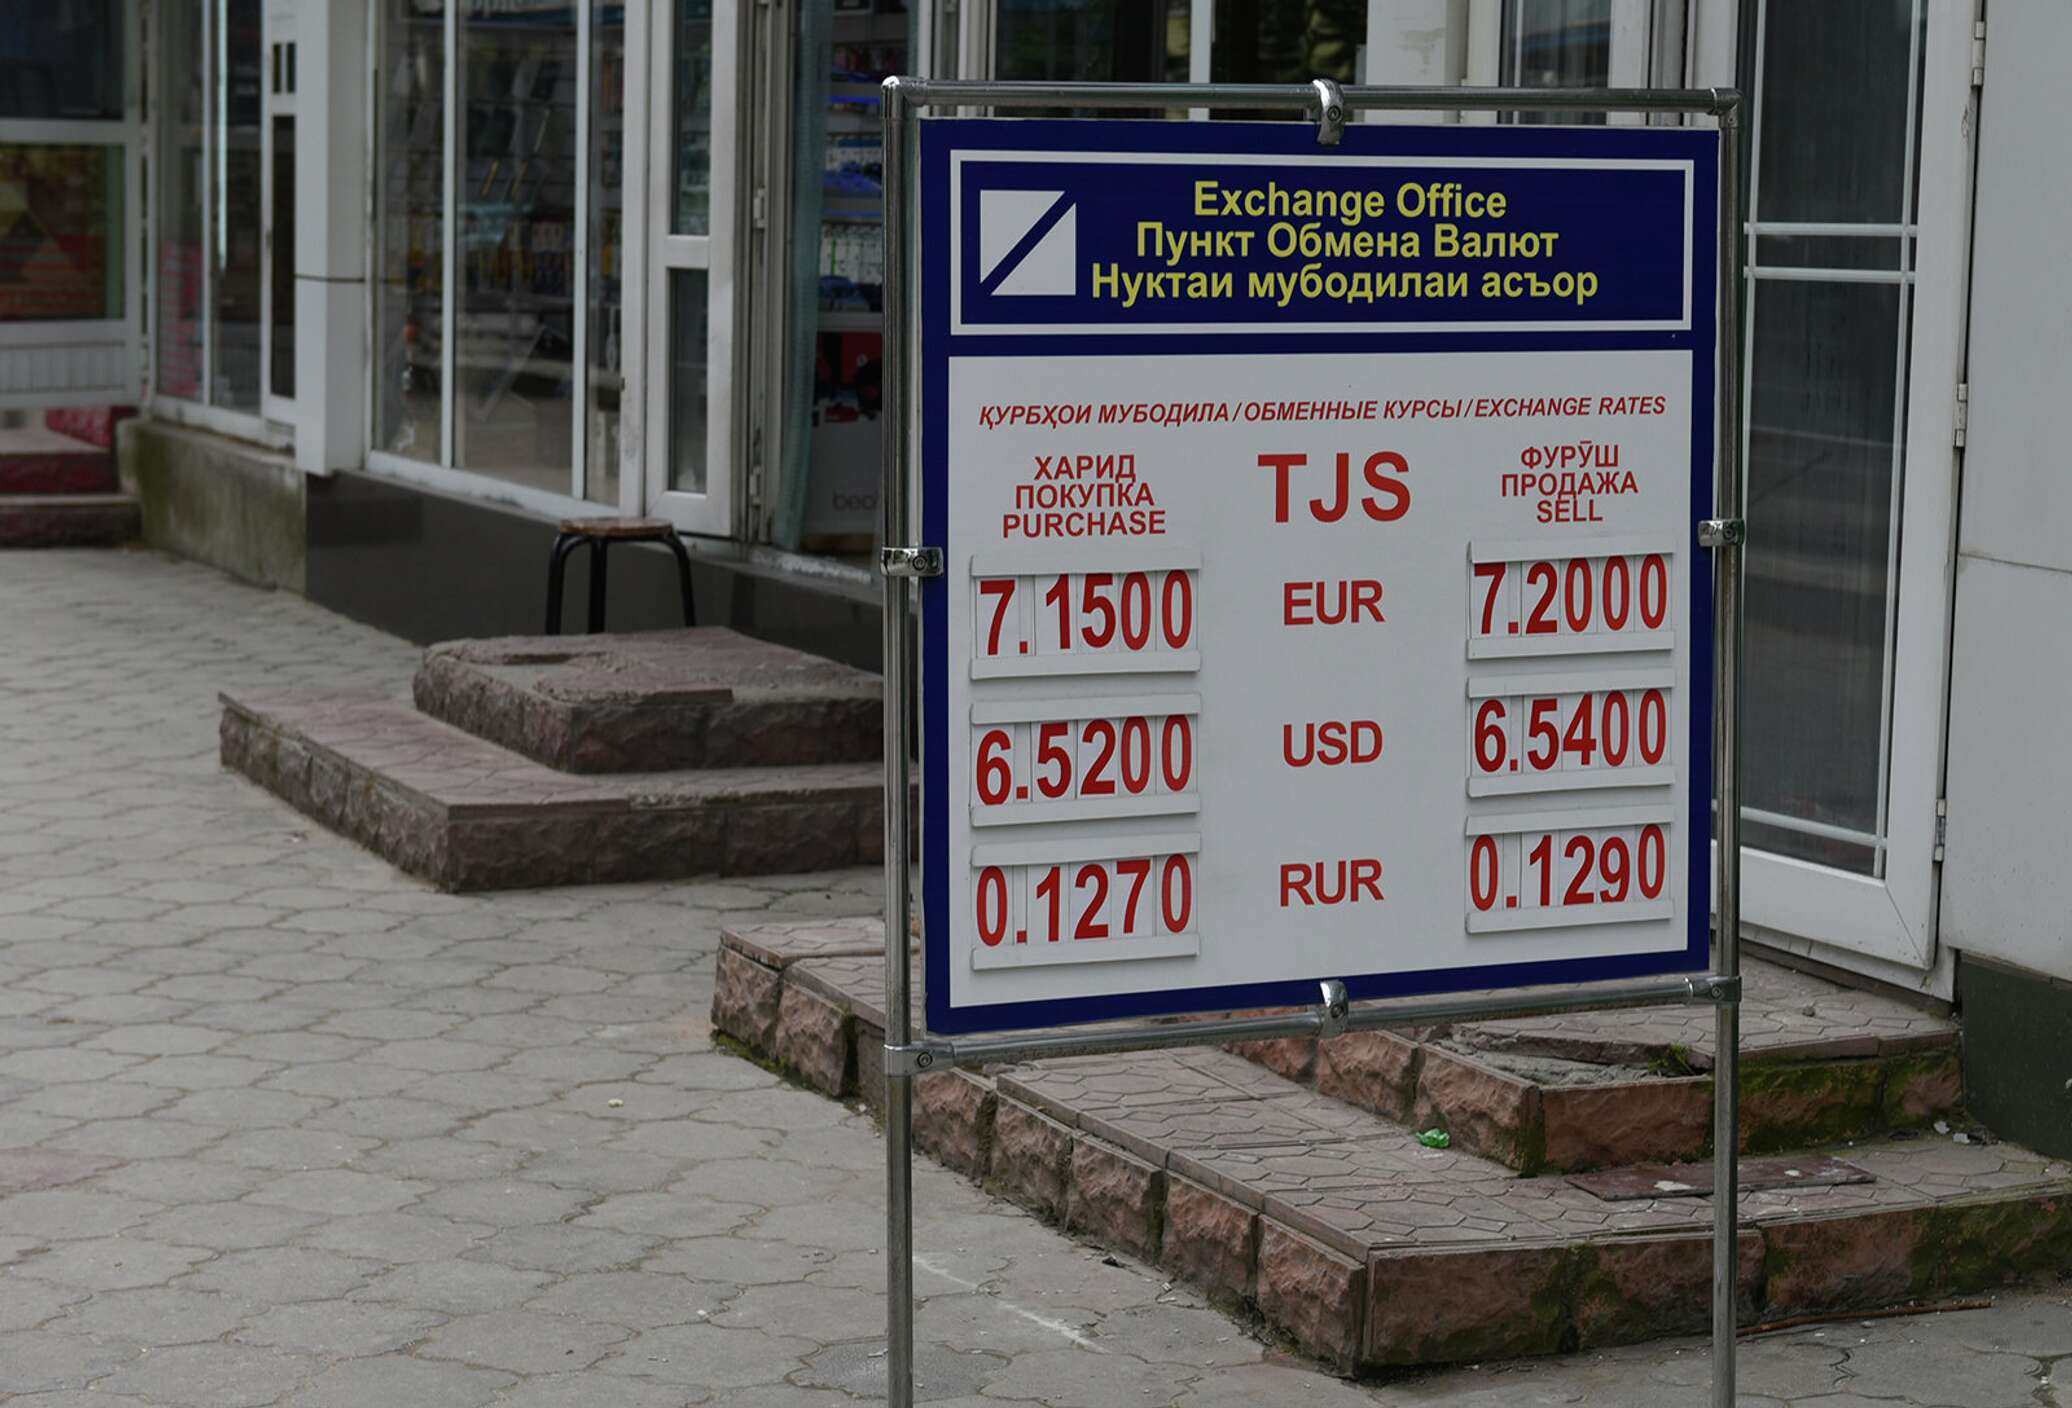 Рубил 1000 курс таджикистан сегодня. Обменный пункт. Обменные пункты в Таджикистане. Курсы валют. Курсы валют в Таджикистане.